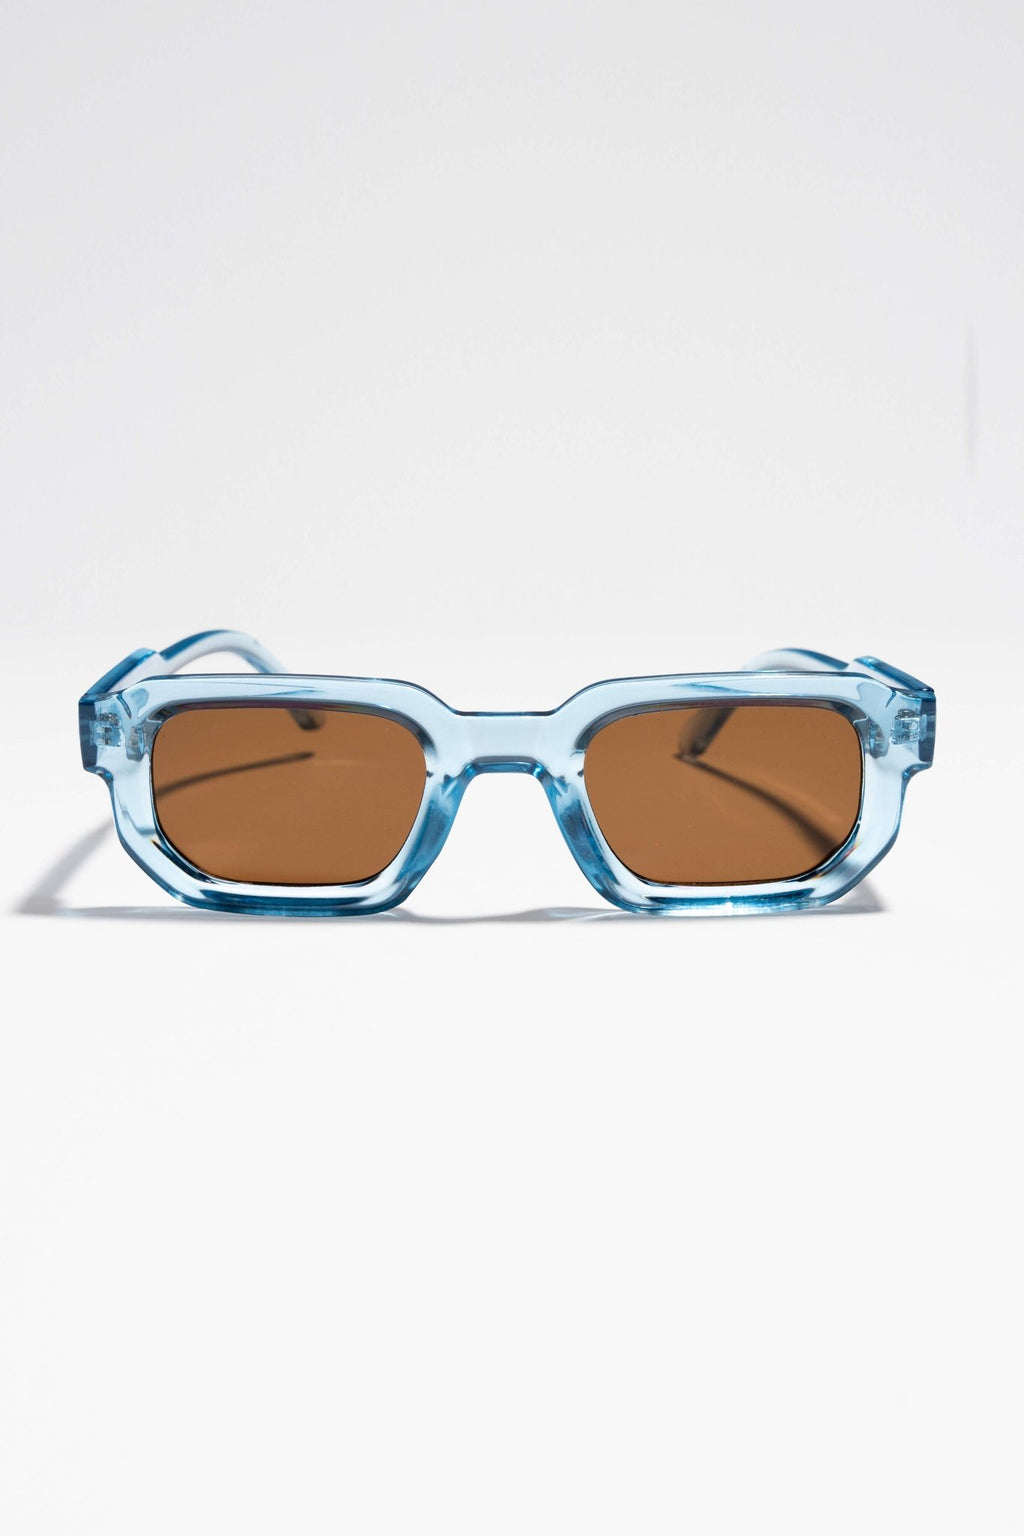 Slnečné okuliare Izzy - modrá/hnedá